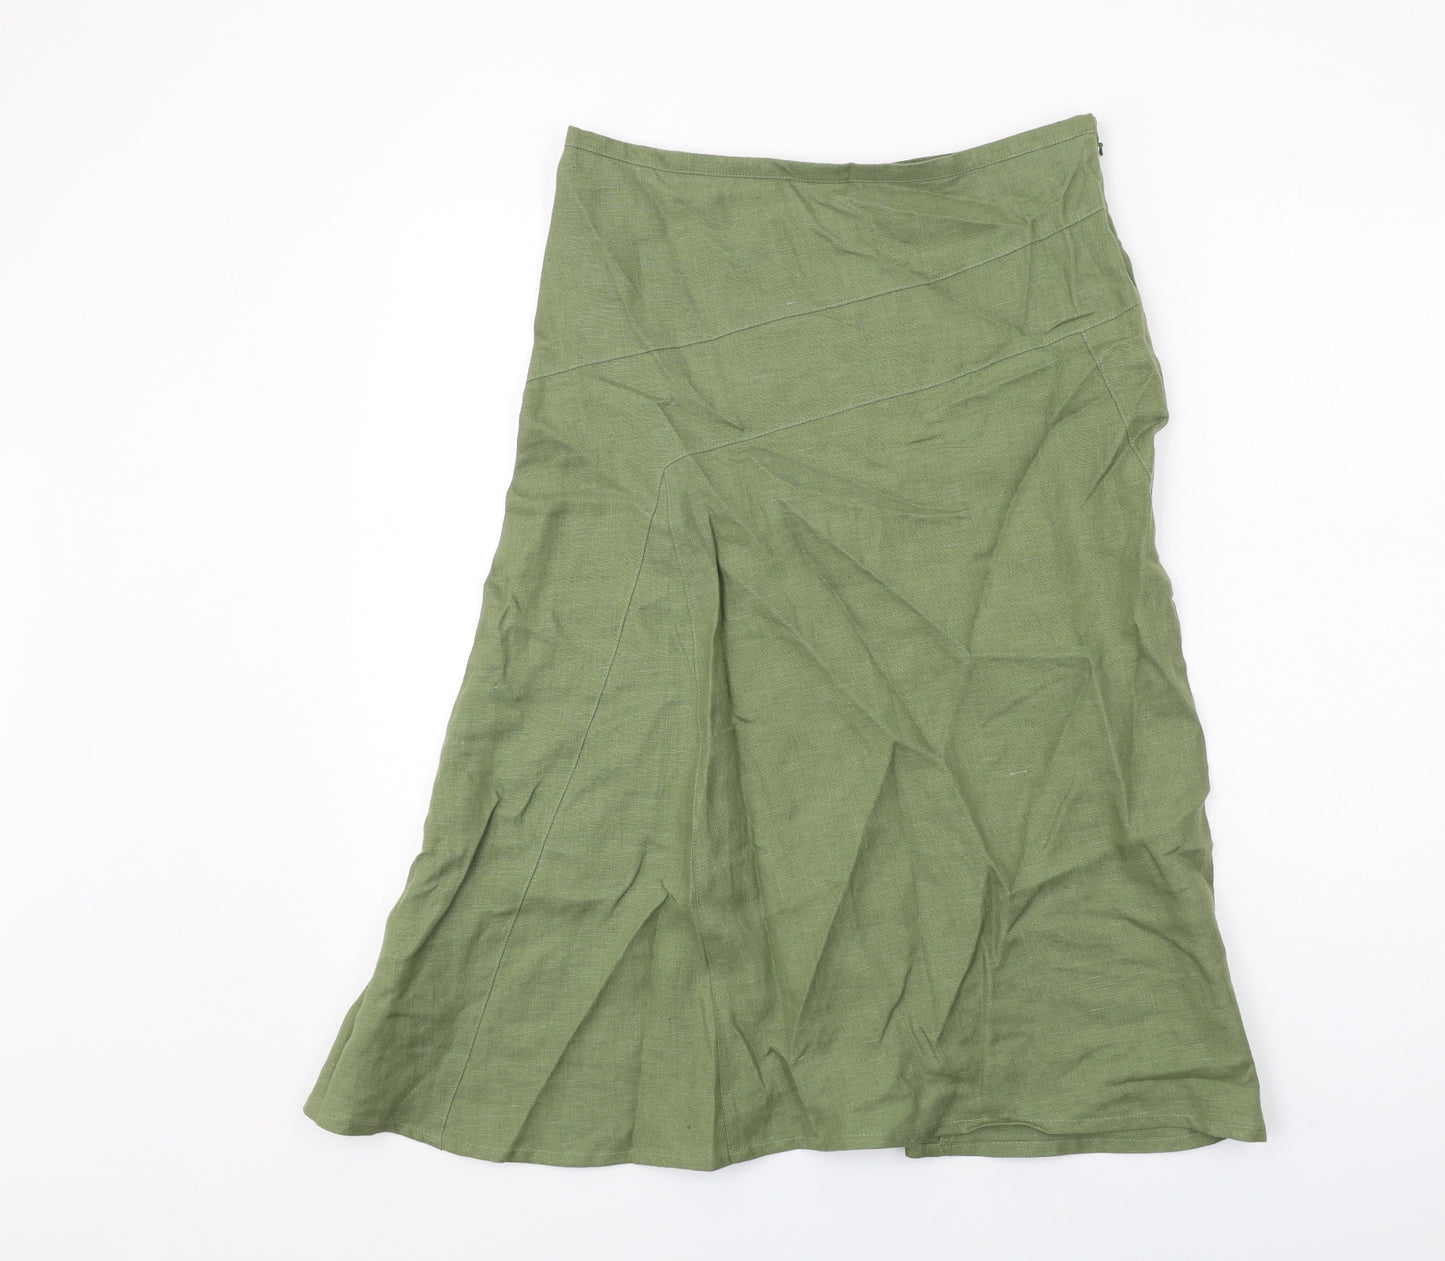 Paul Berman Womens Green Linen A-Line Skirt Size 10 Zip